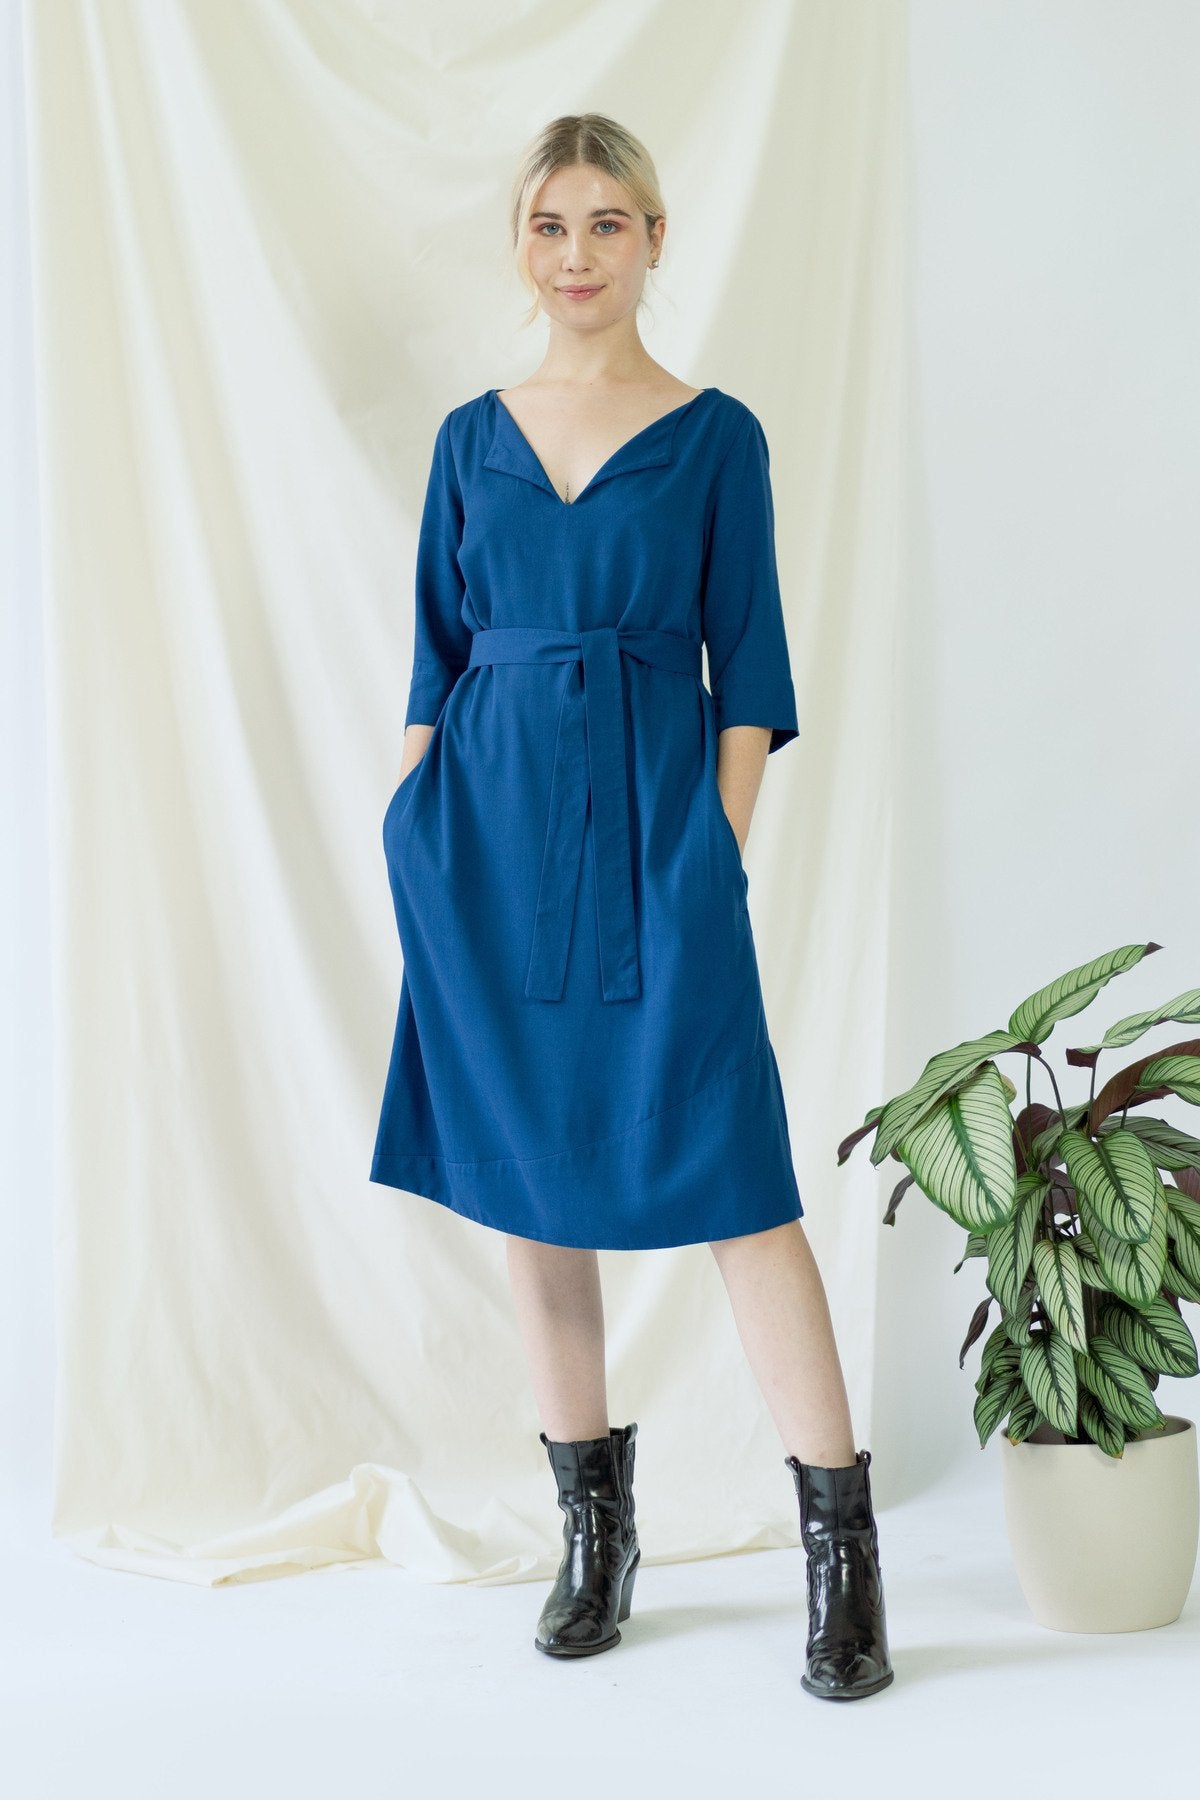 Catherine | Kleid mit optionalem Gürtel in klassischem Blau